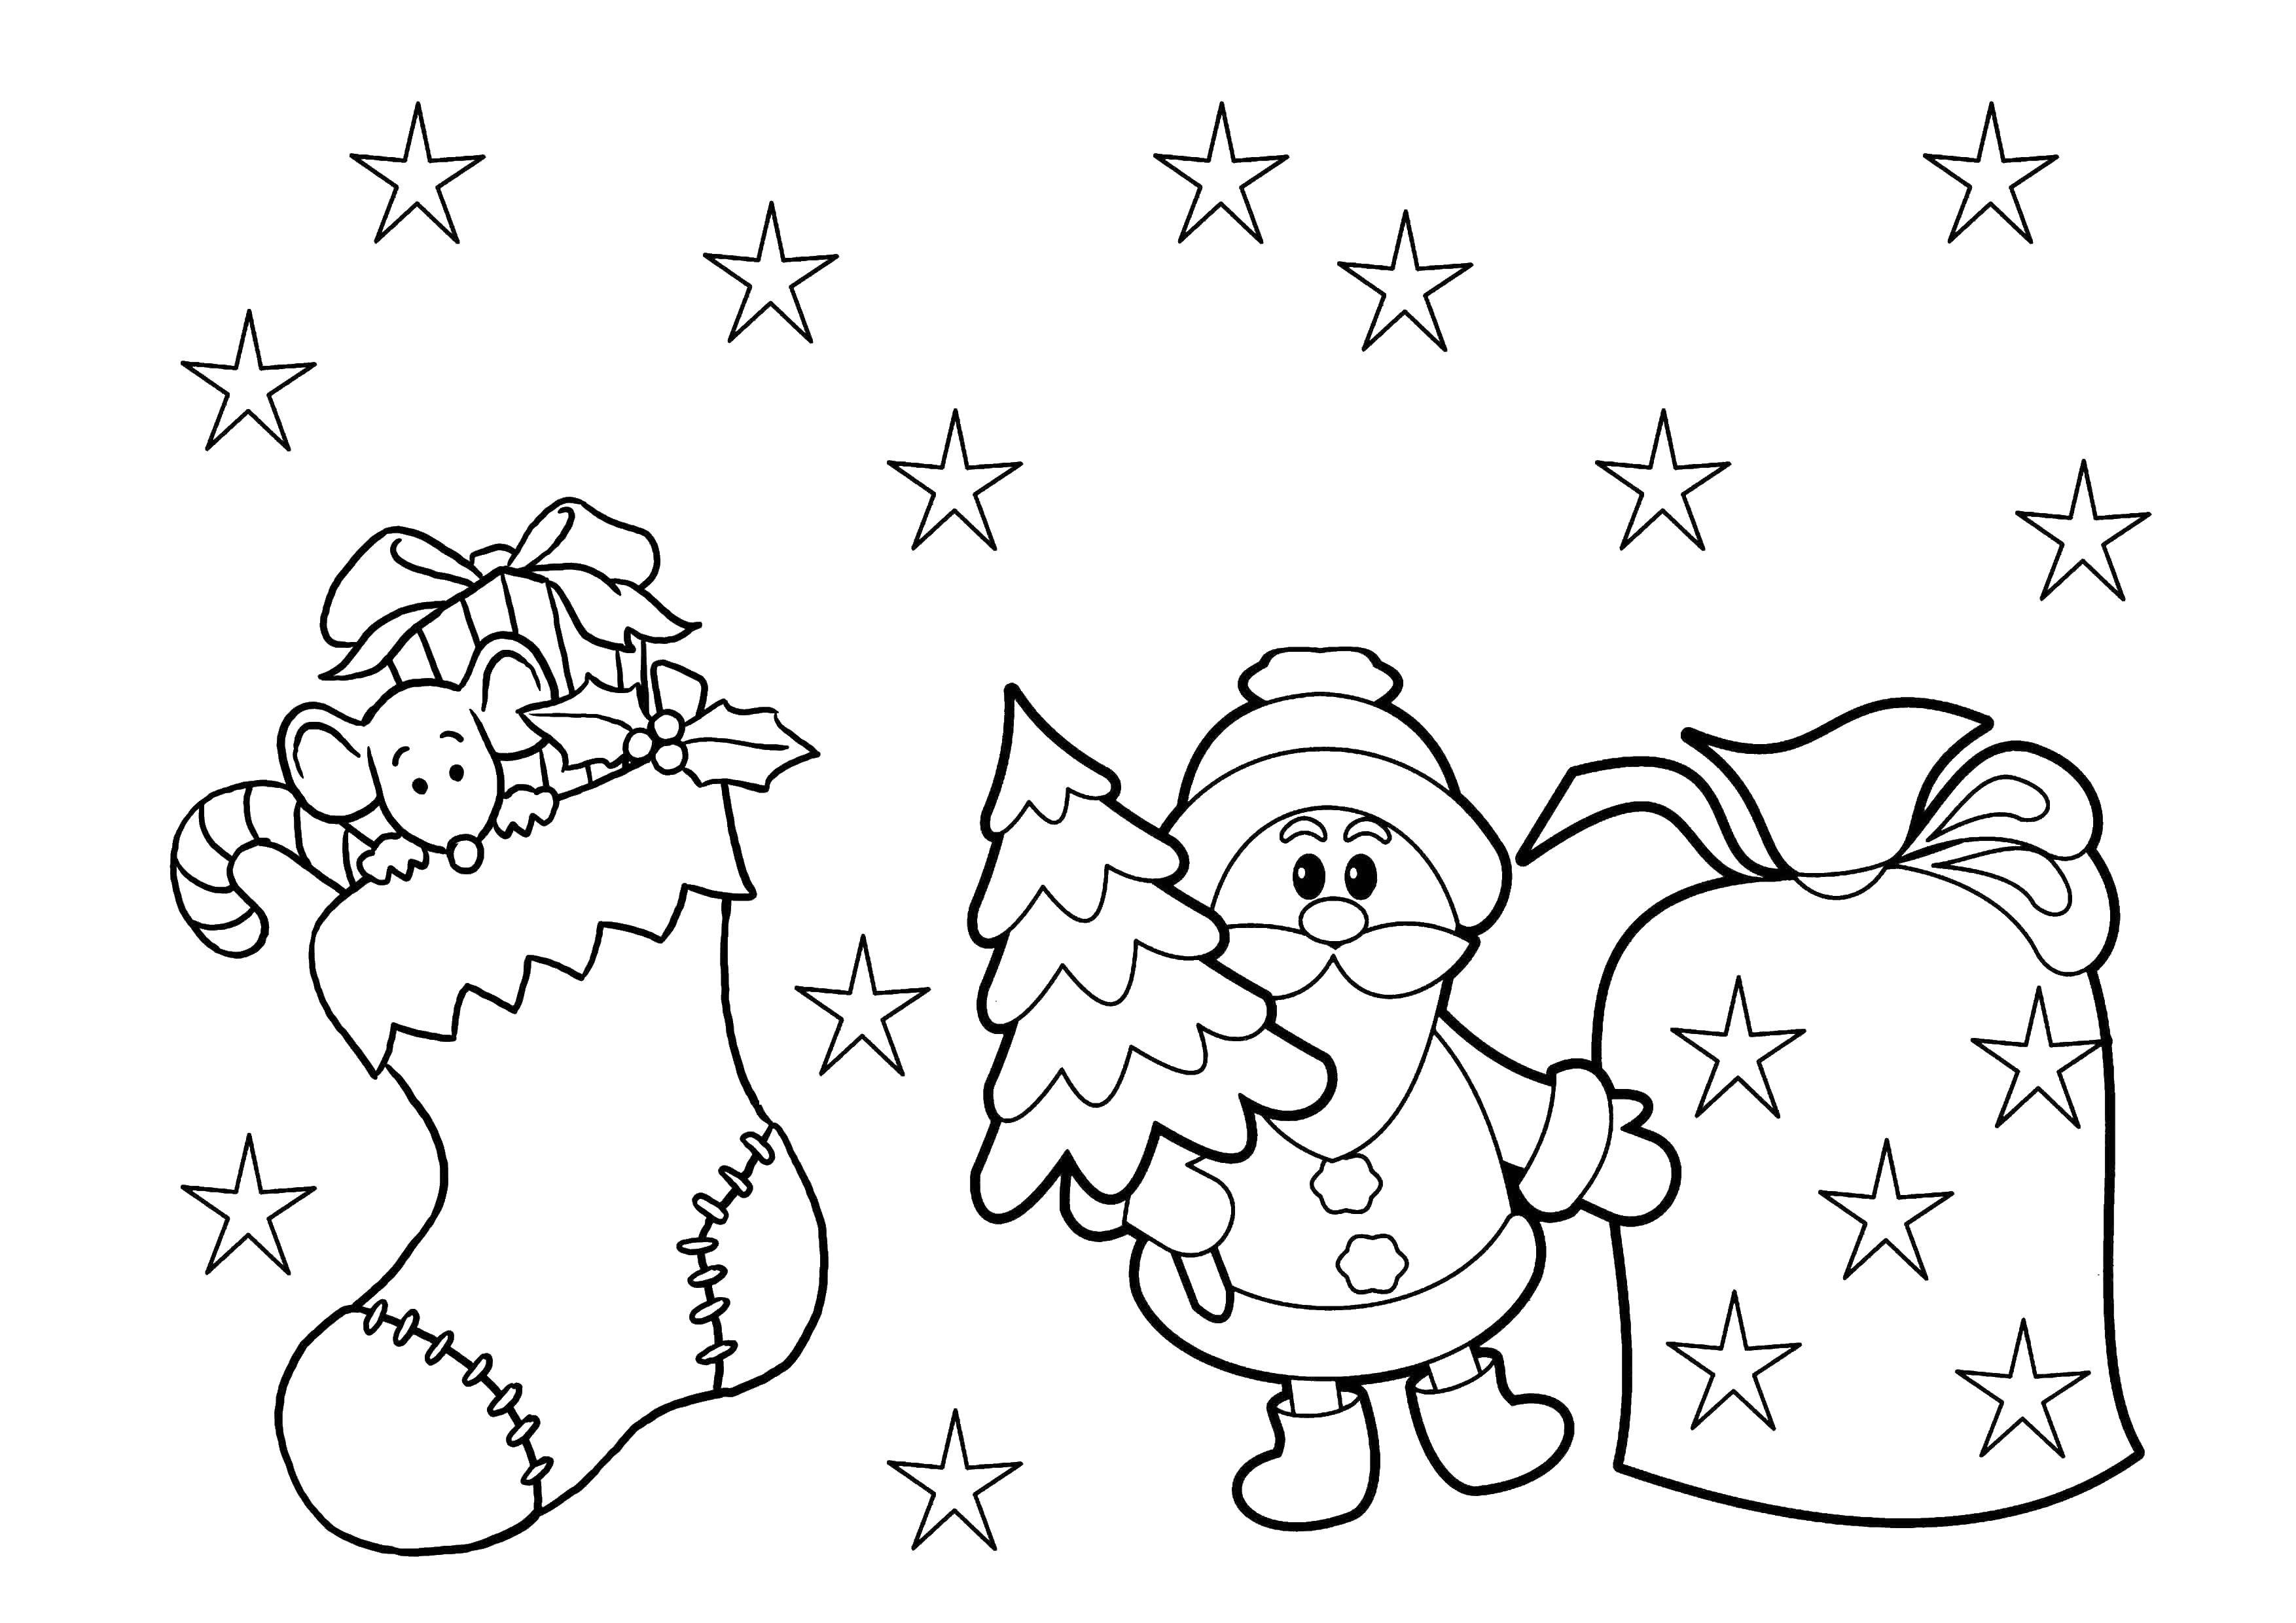 Coloring Santa Claus and bag of gifts. Category Christmas. Tags:  Santa Claus, bag toys.